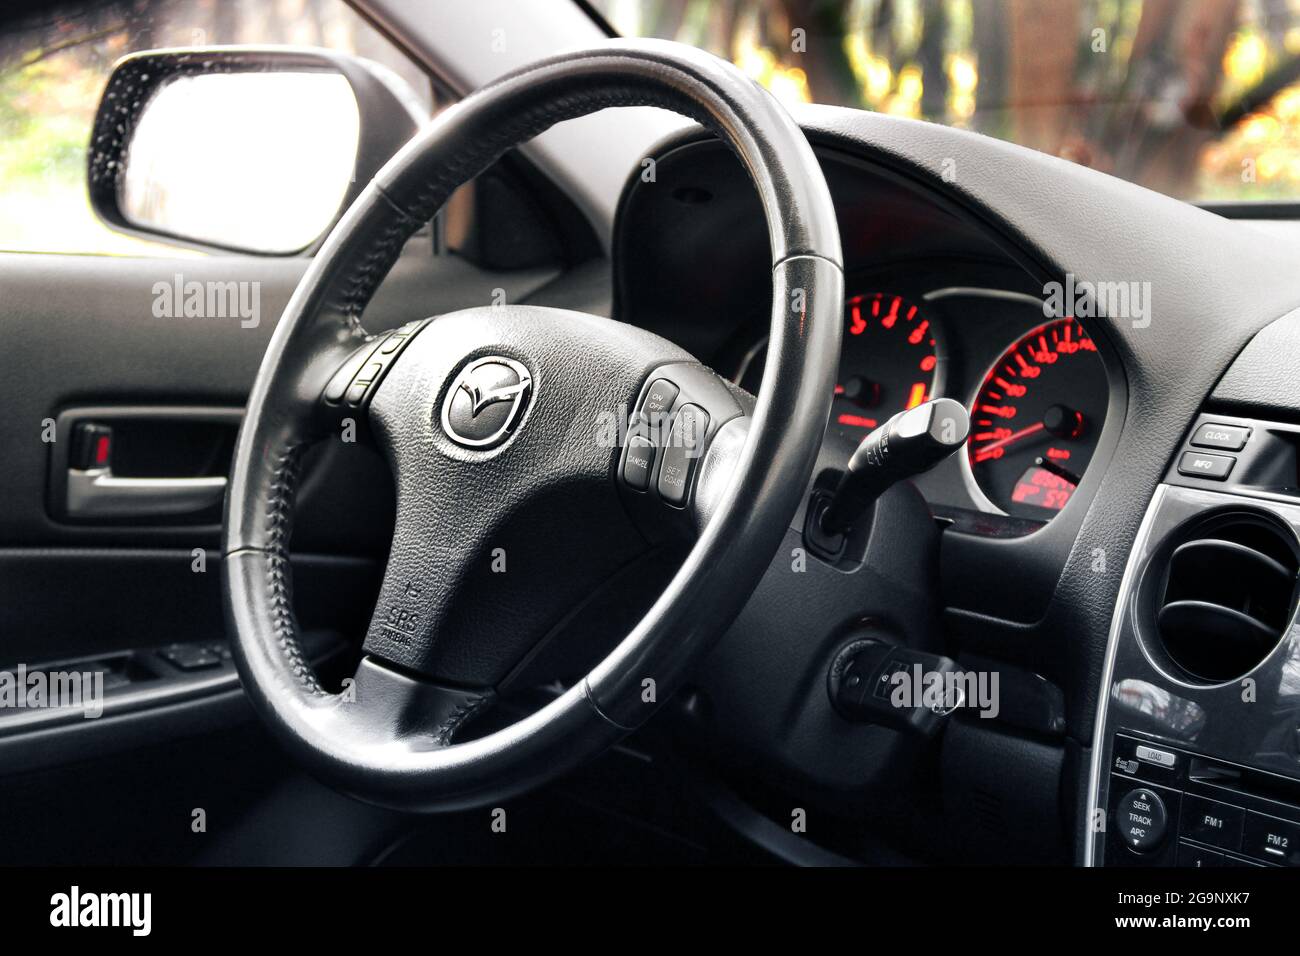 Kiev, Ukraine - 5 novembre 2018 : intérieur de voiture Mazda. Vue de l'intérieur d'une automobile moderne montrant le tableau de bord Banque D'Images